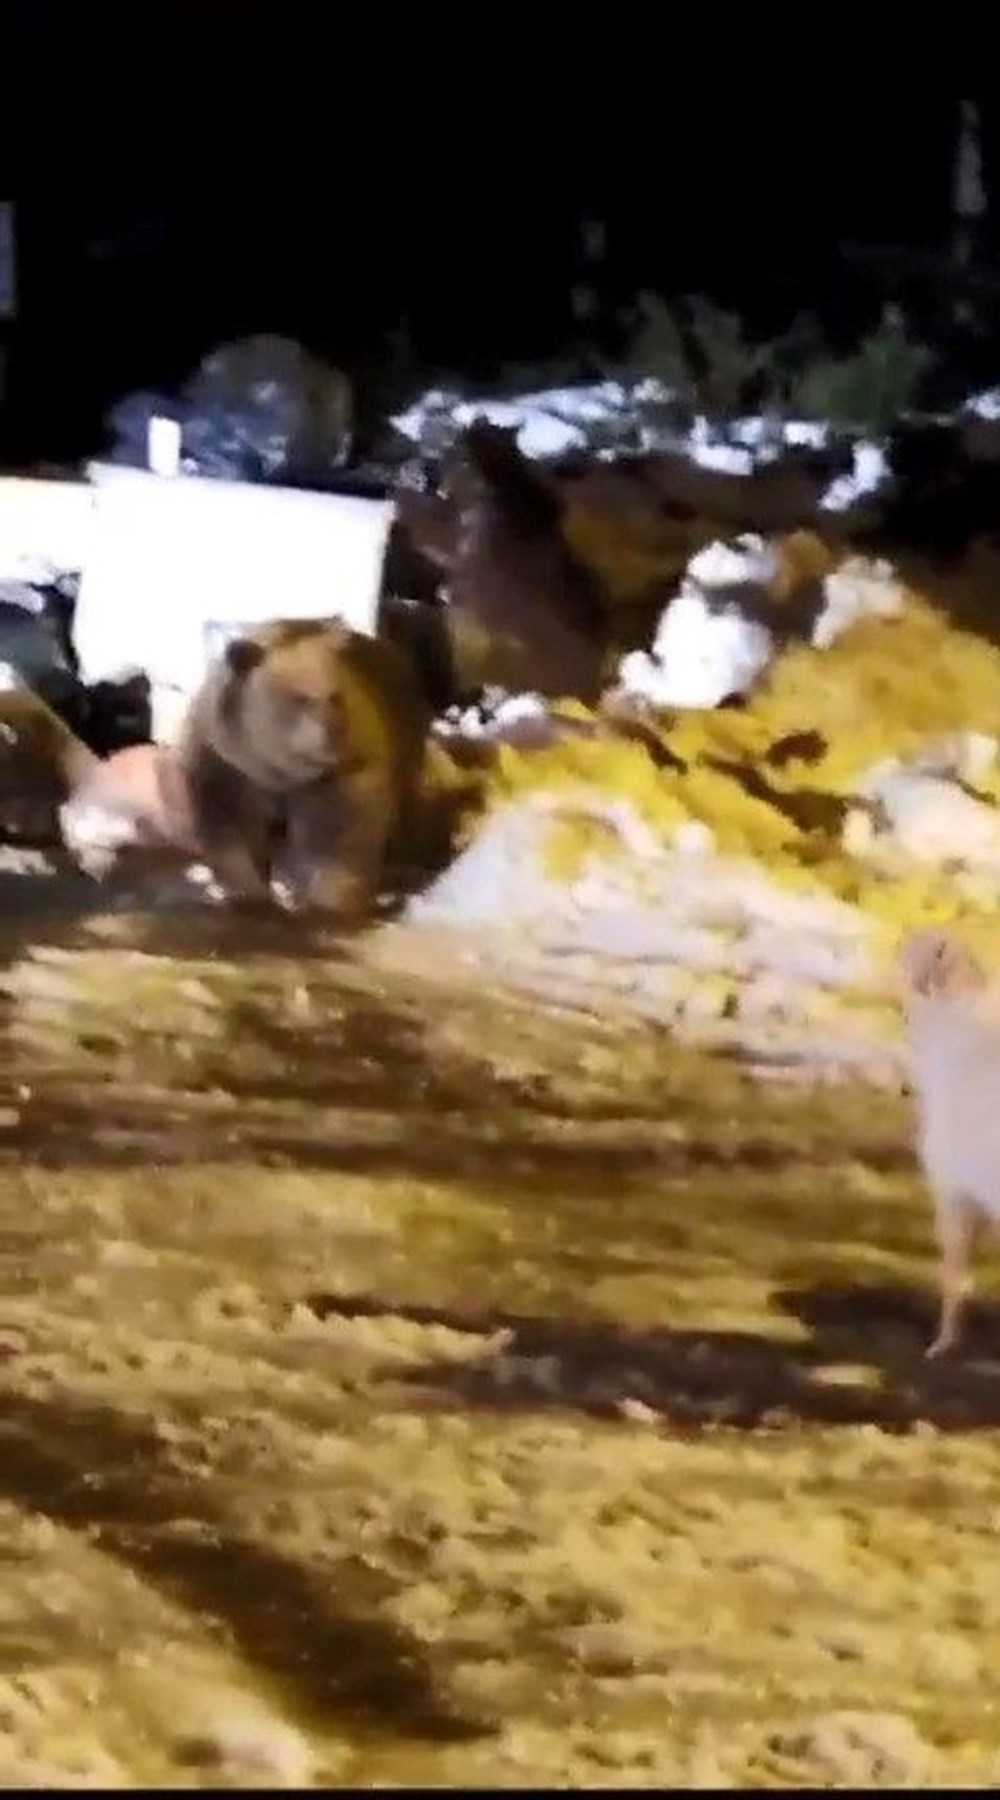 Uludağ’da kış uykusuna dalamayan ayı ailesi kendilerini
rahatsız eden köpeğe saldırdı - 3